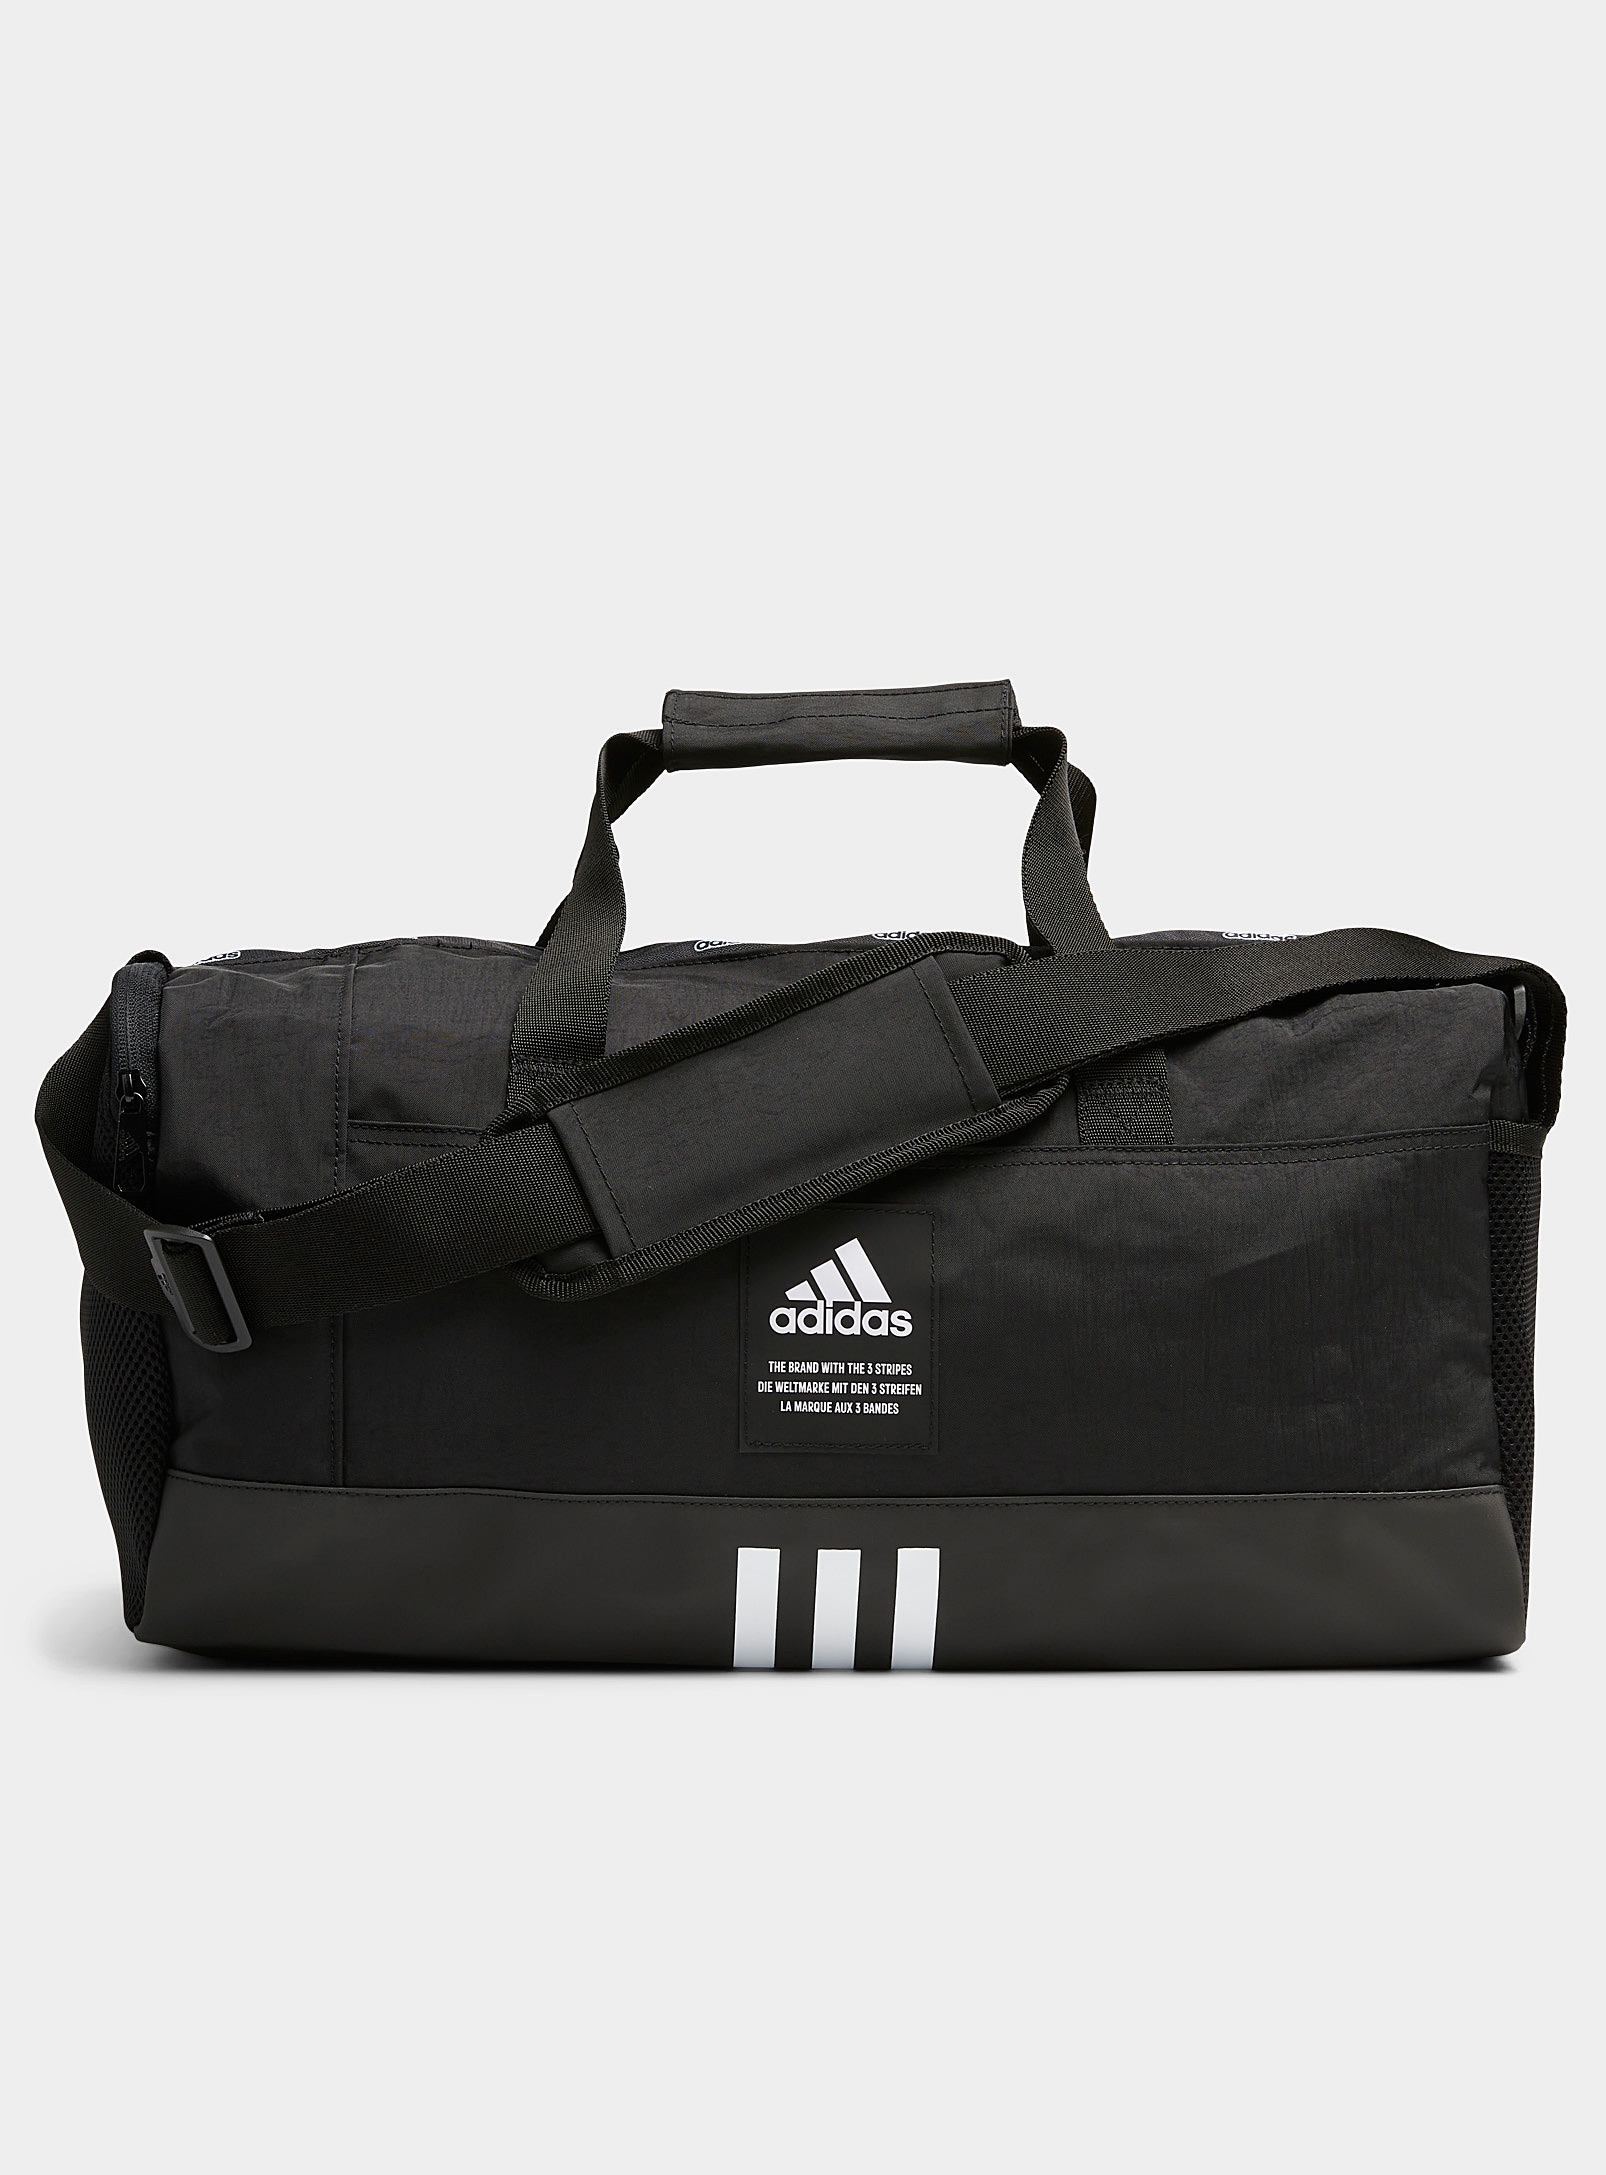 Adidas Originals Small 4athlts Duffle Bag Black | ModeSens